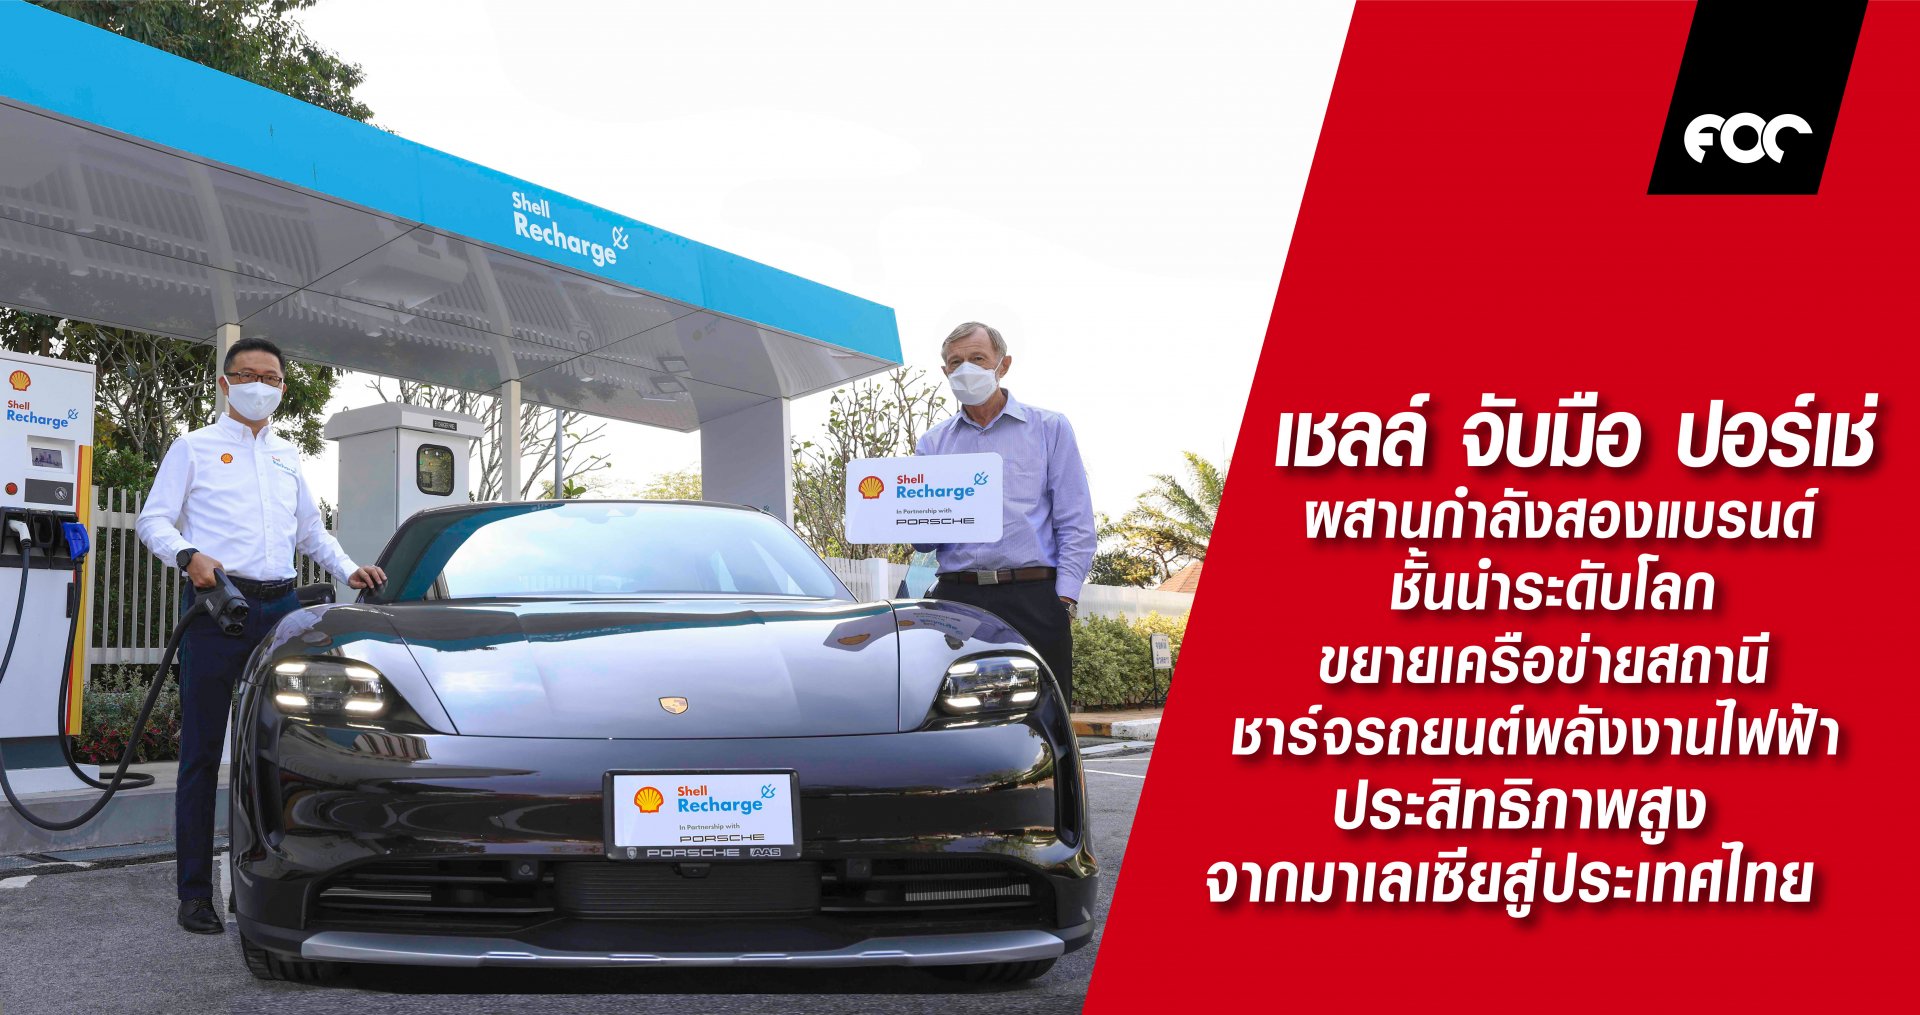 เชลล์ จับมือ ปอร์เช่ ผสานกำลังสองแบรนด์ชั้นนำระดับโลก ขยายเครือข่ายสถานีชาร์จรถยนต์พลังงานไฟฟ้าประสิทธิภาพสูงจากมาเลเซียสู่ประเทศไทย 